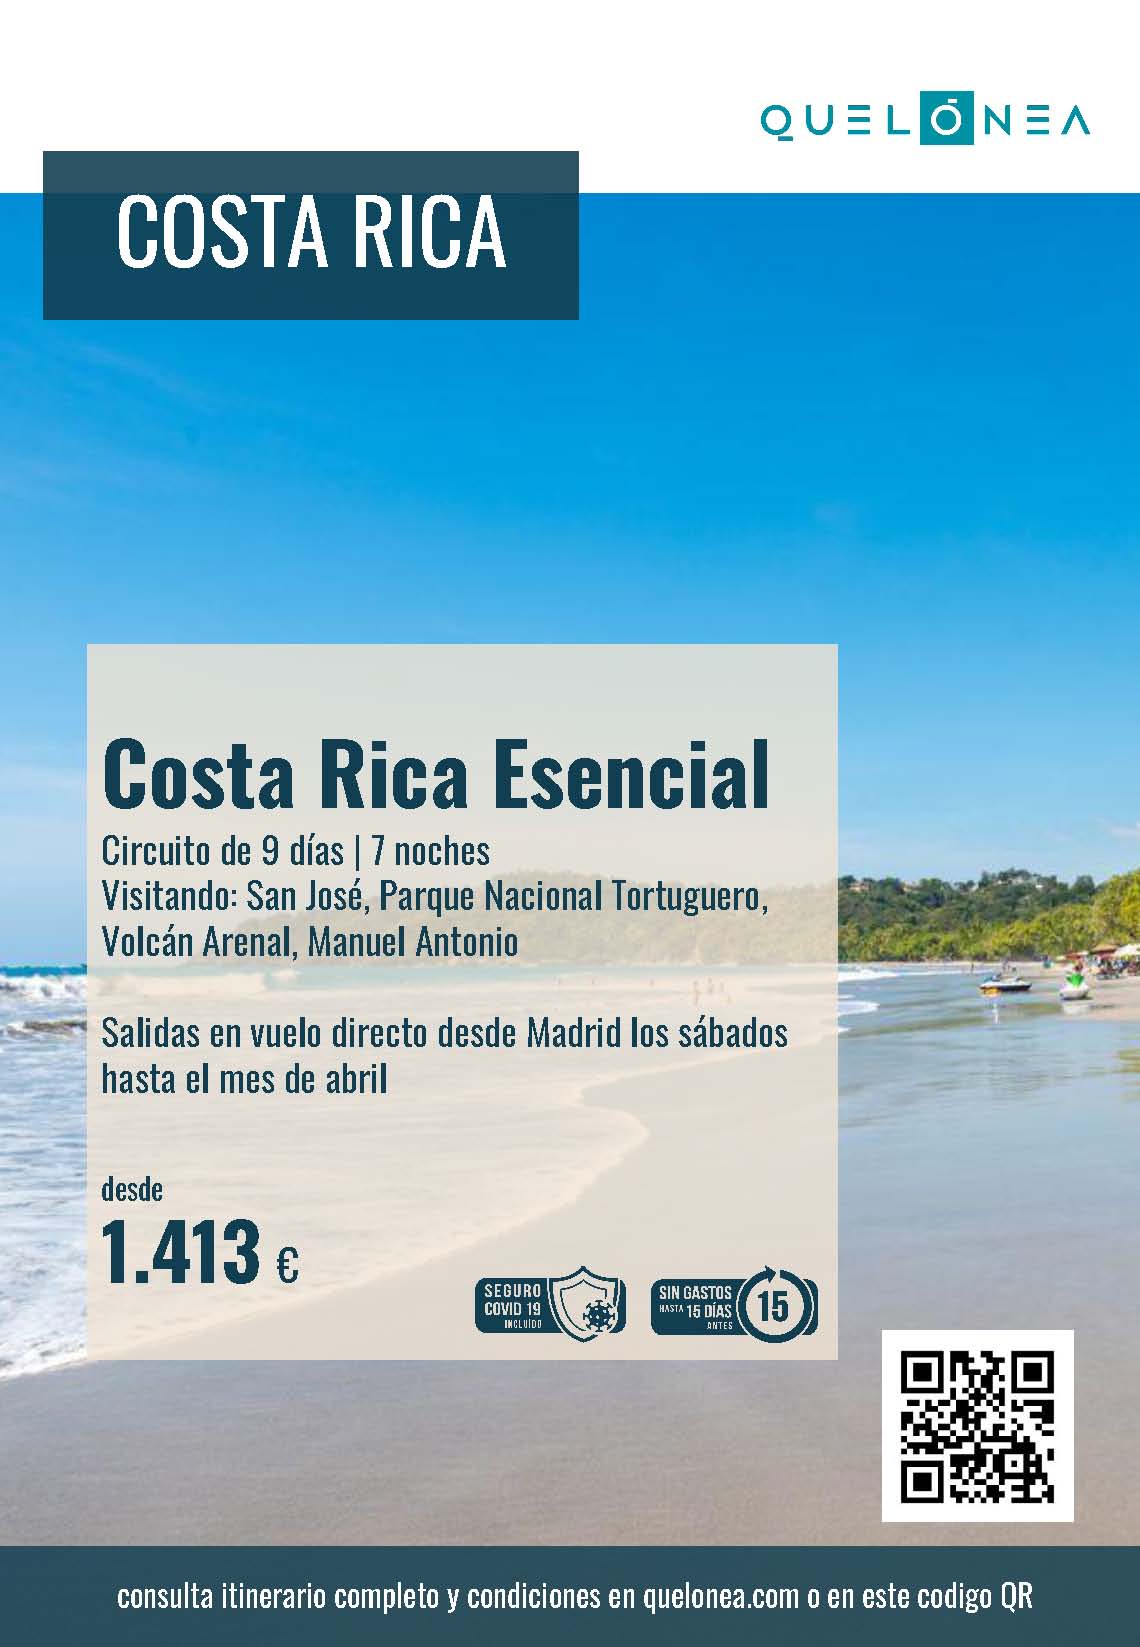 Oferta Quelonea Costa Rica Esencial 9 dias Noviembre 2021 a Abril 2022 vuelo directo desde Madrid